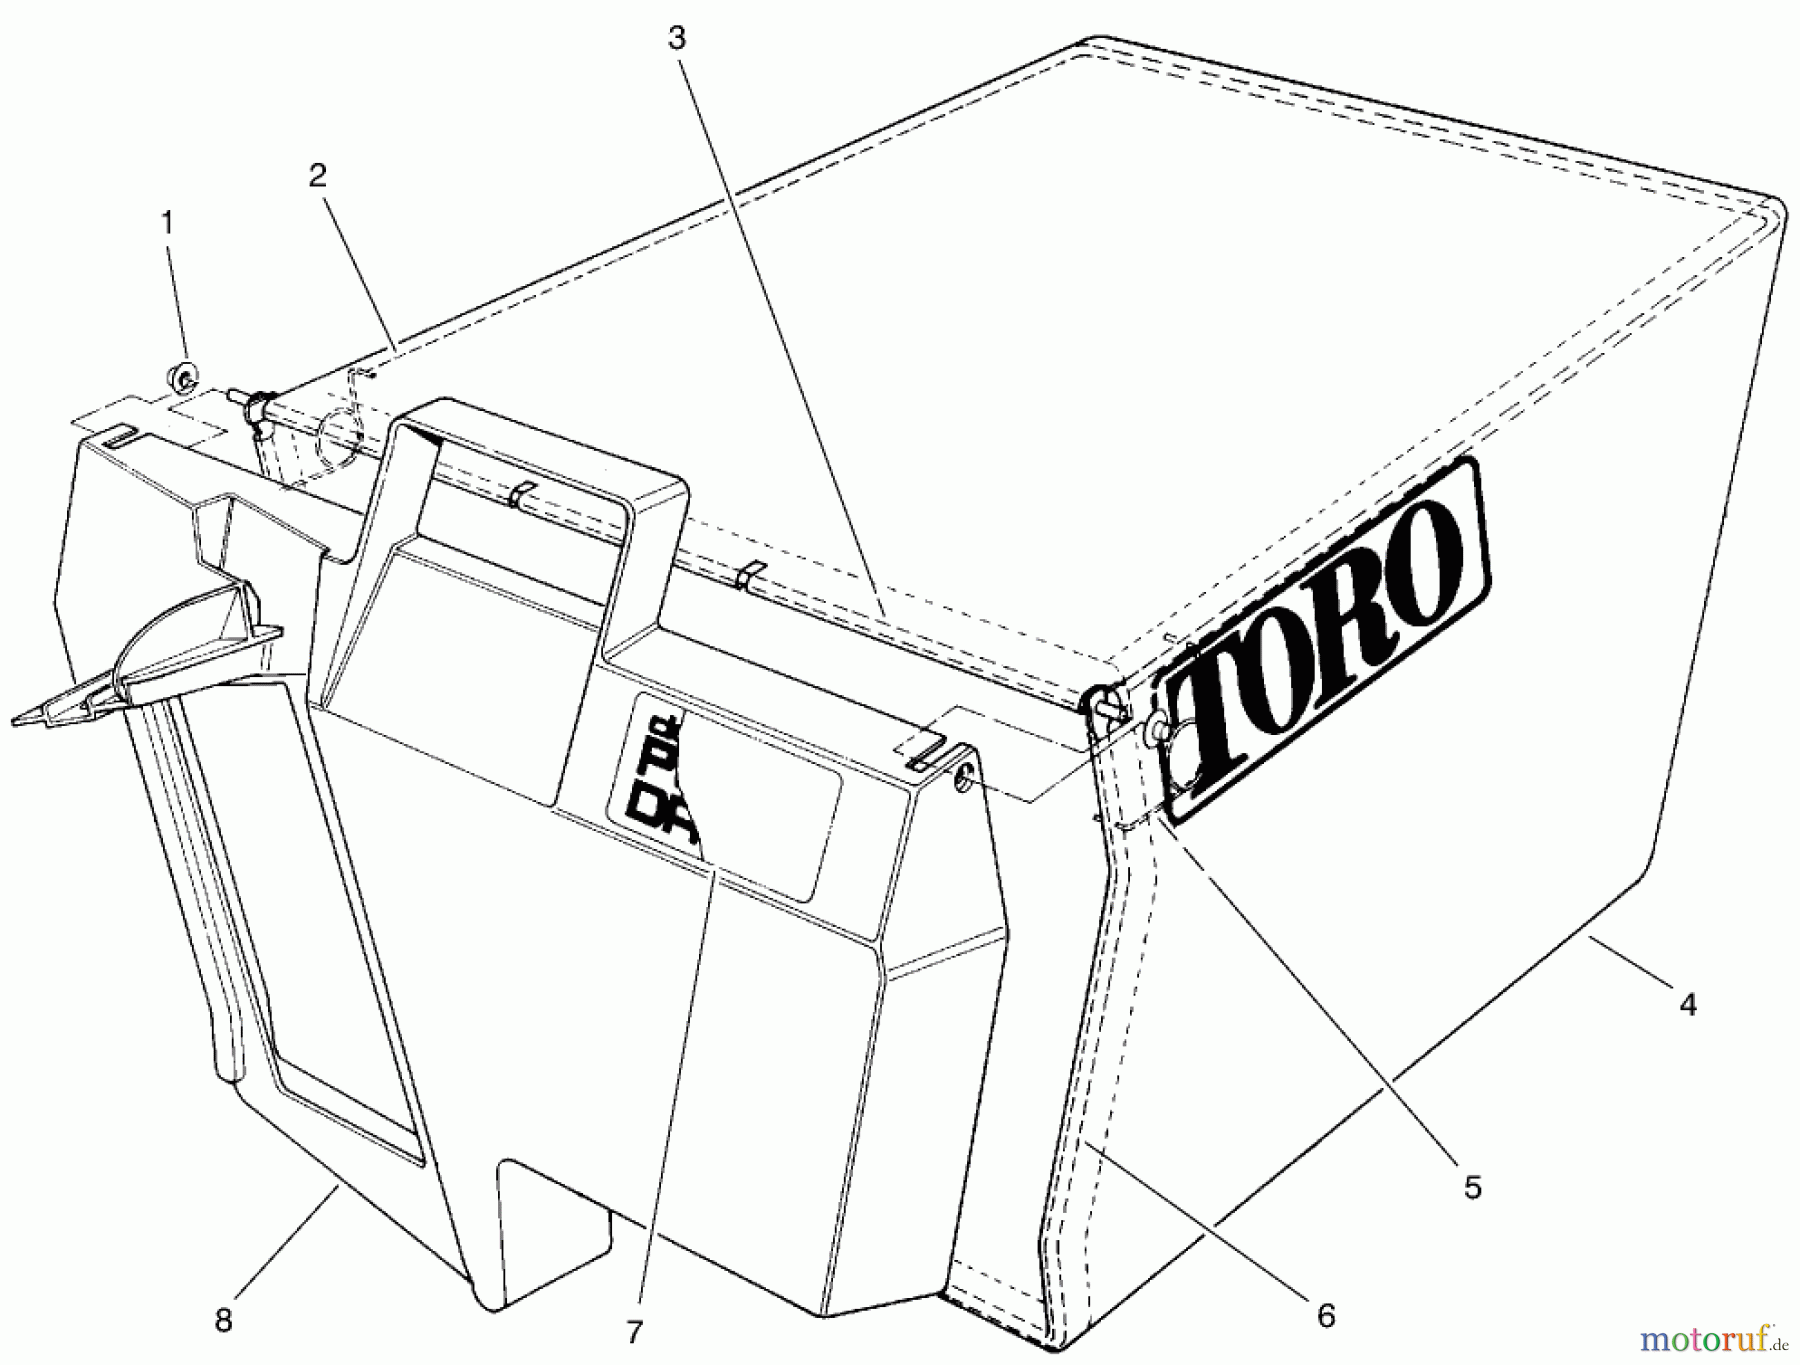  Toro Neu Mowers, Walk-Behind Seite 1 20475 - Toro Lawnmower, 1996 (6900001-6999999) BAG ASSEMBLY PART NO. 11-0189